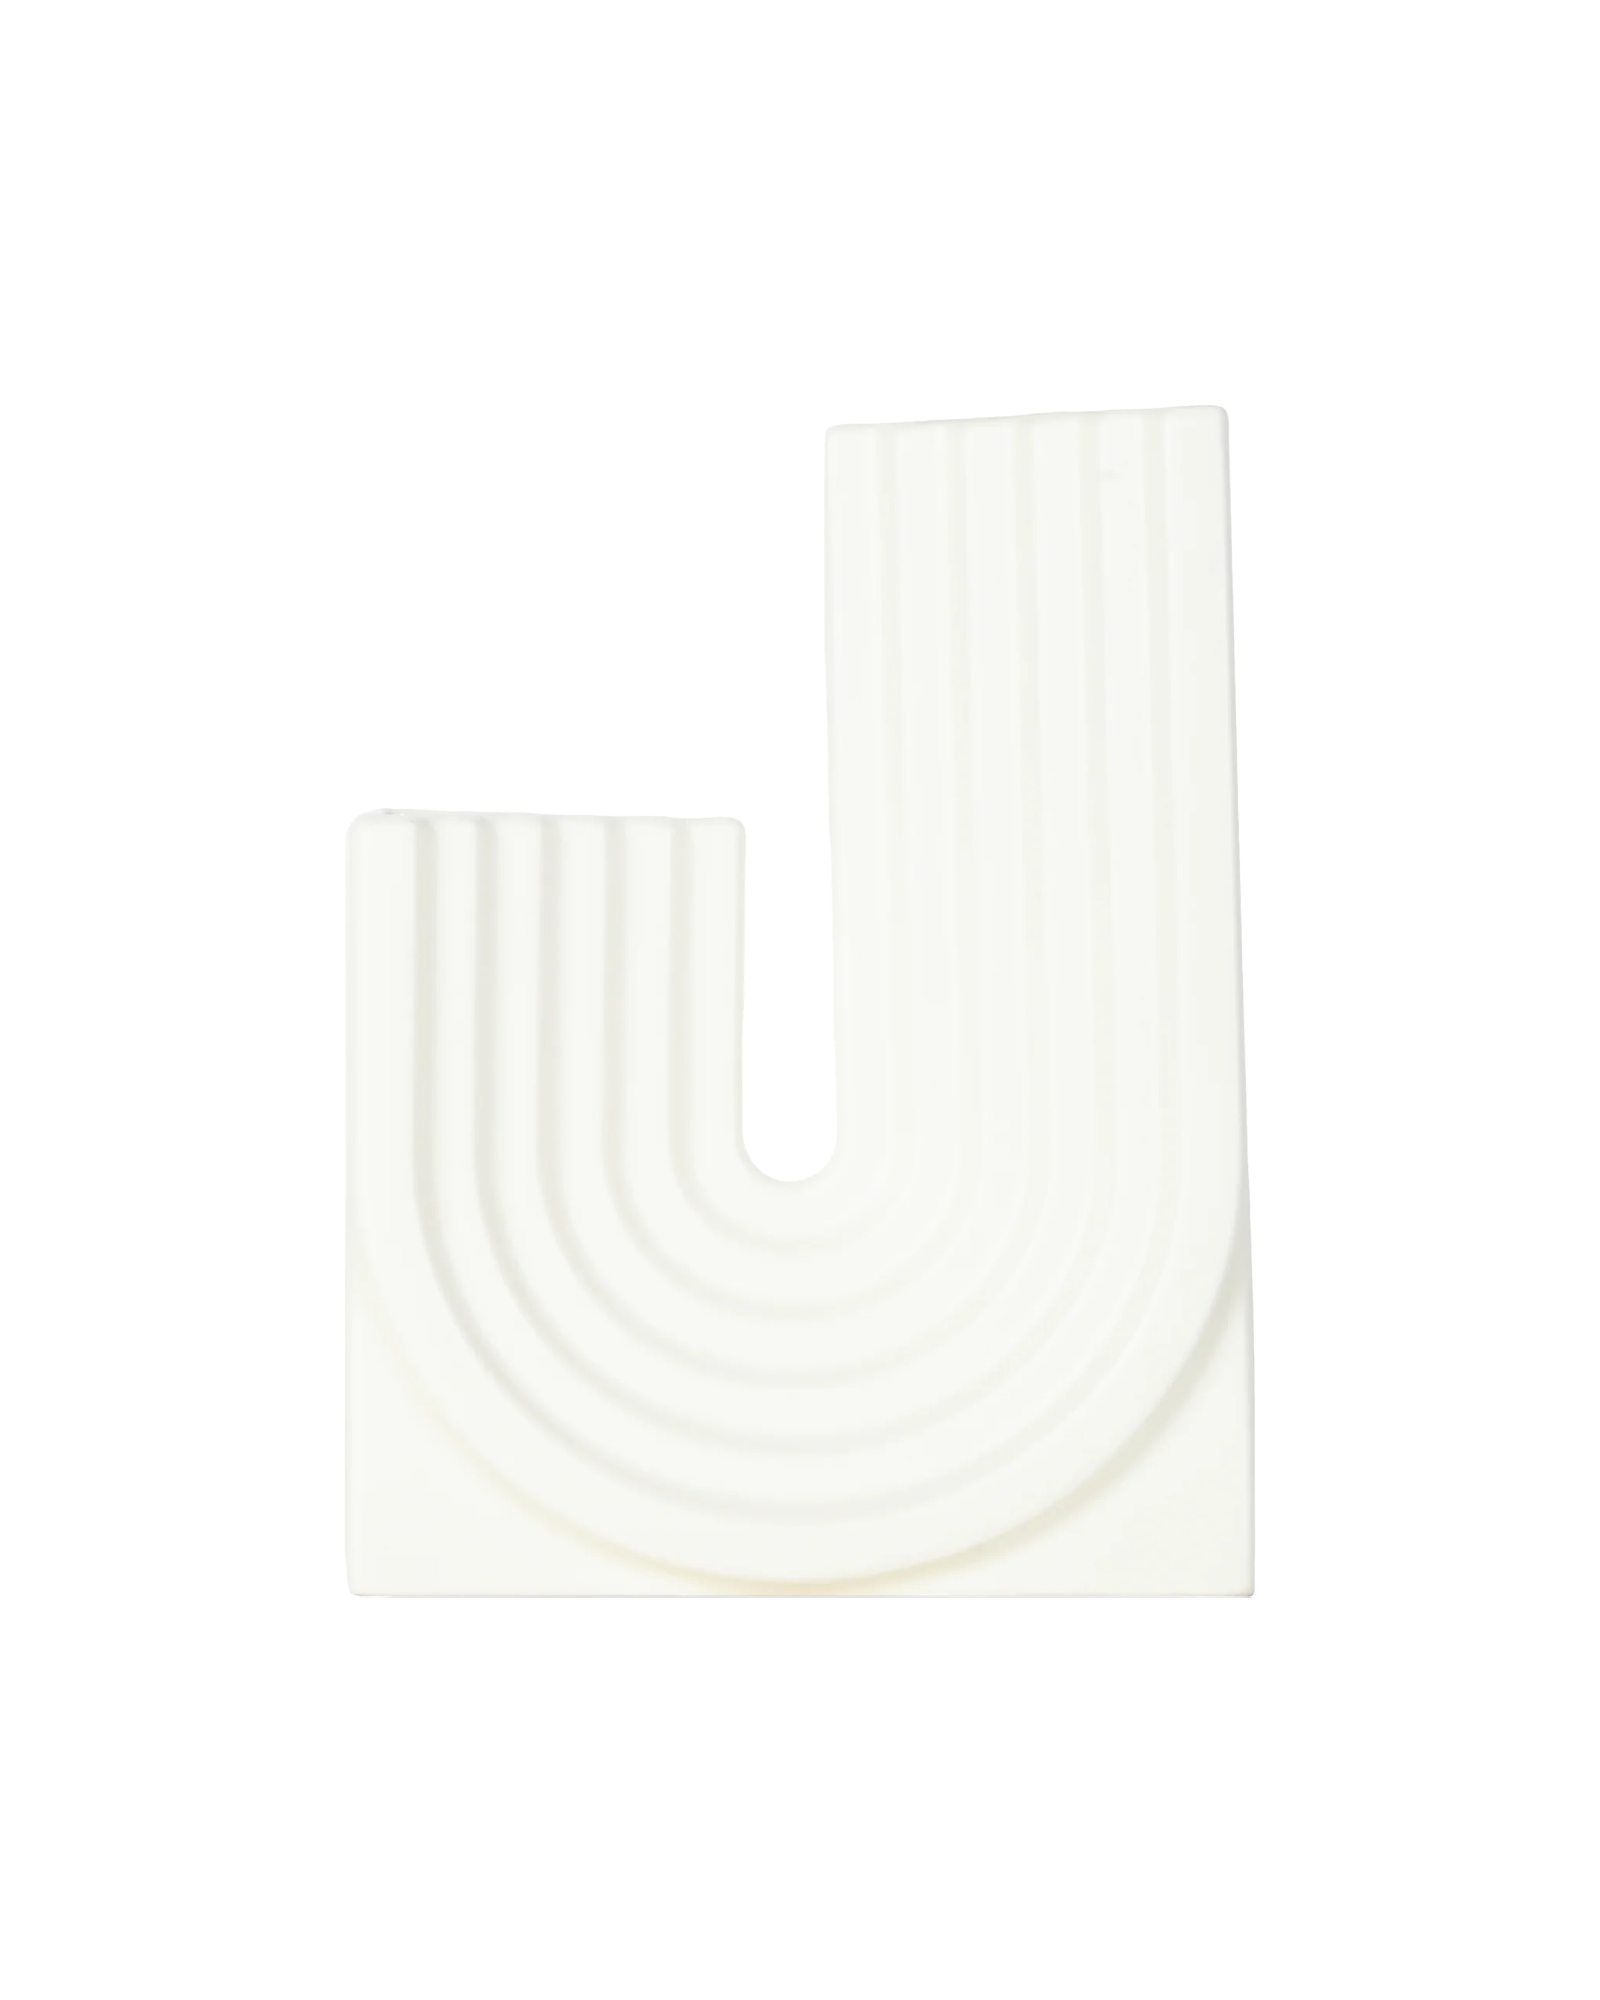 [RENTAL] Archway J Vase